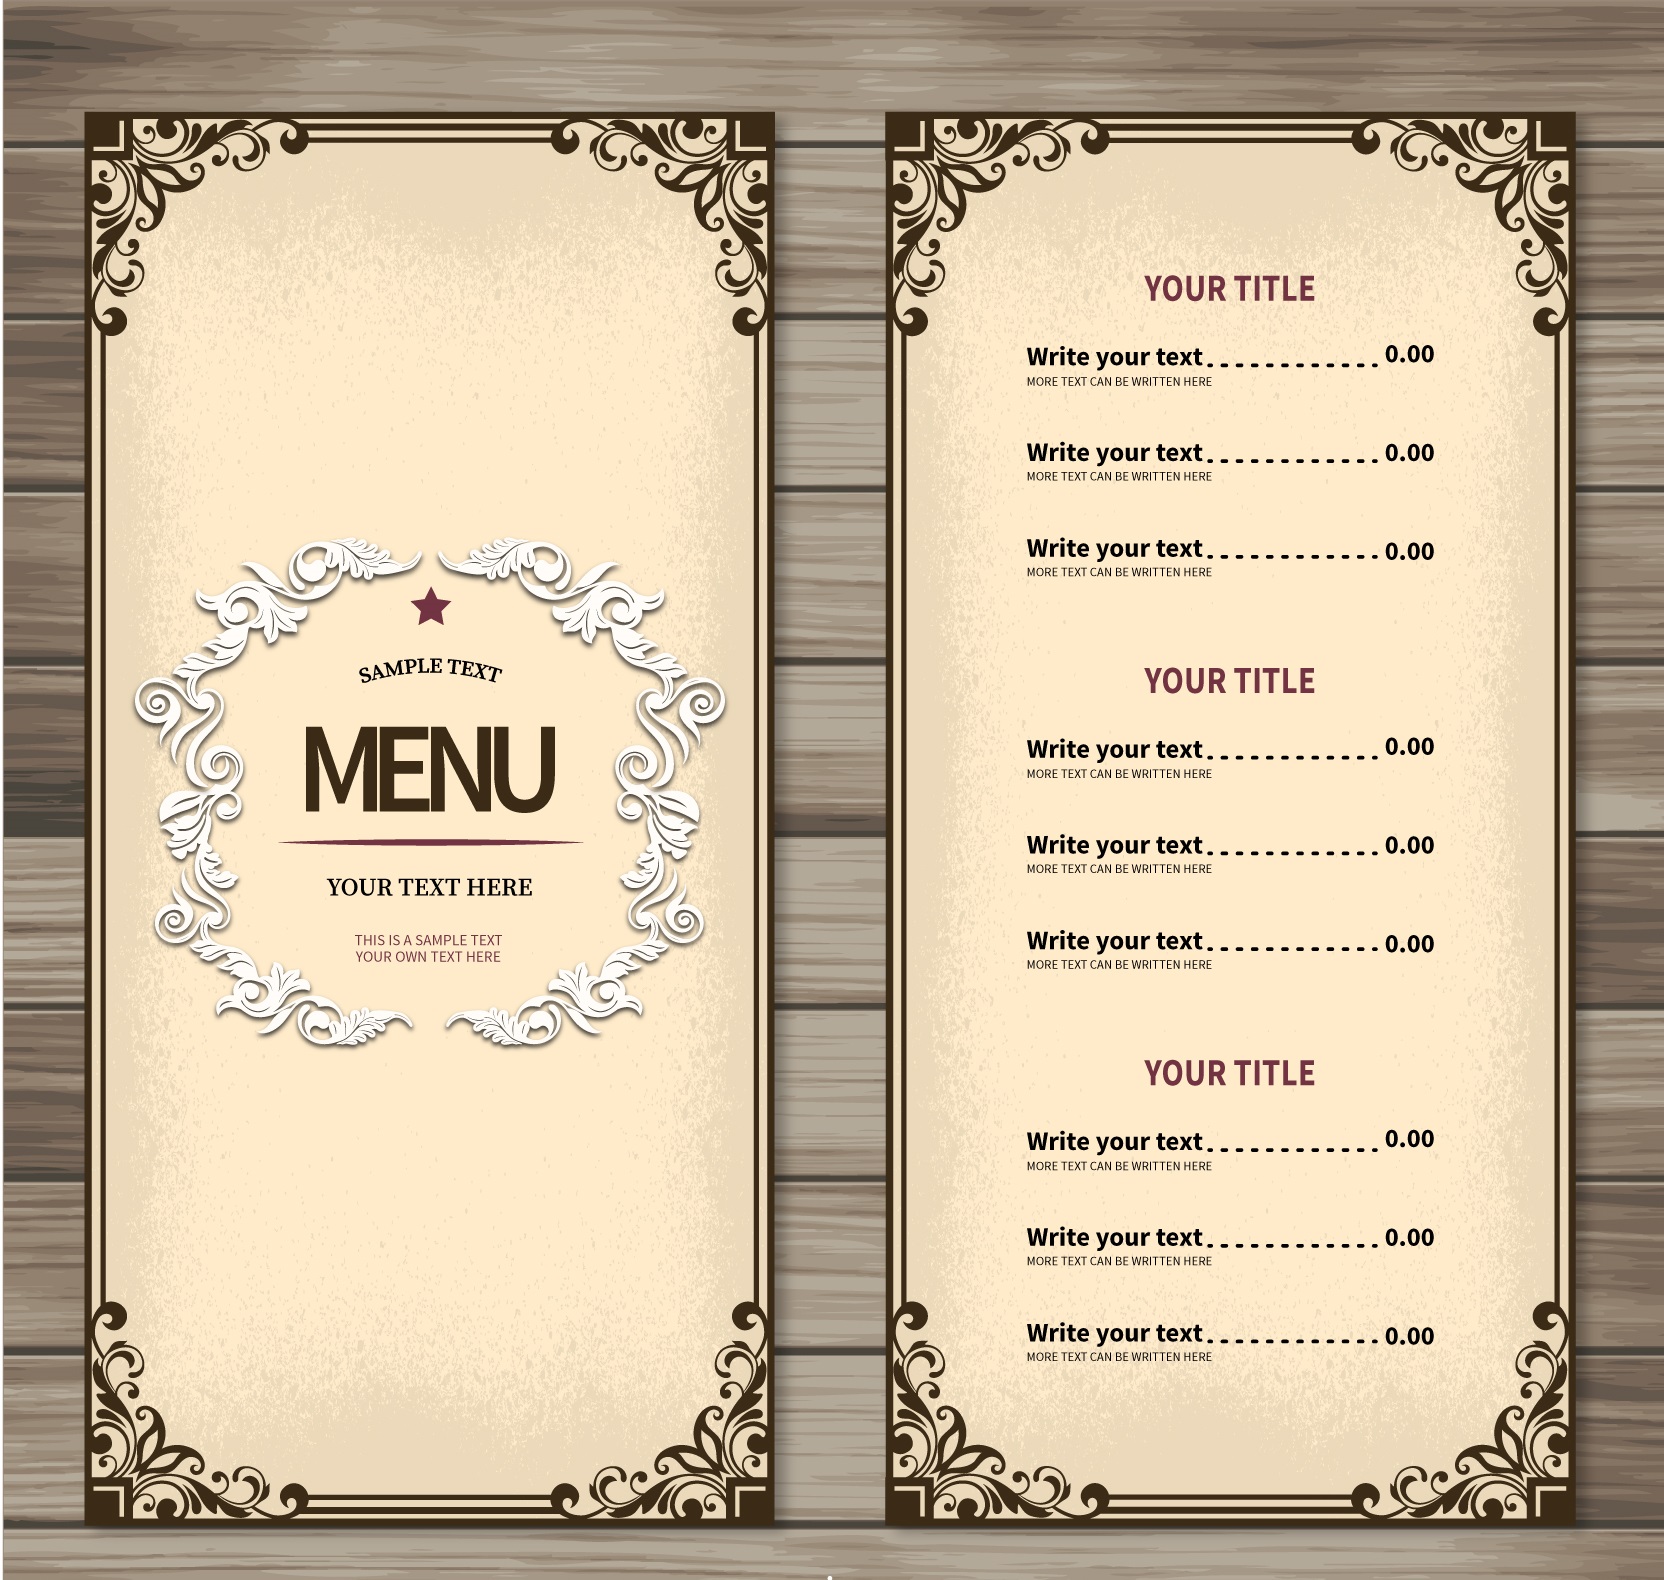 Меню ресторана шаблон. Макет меню для кафе. Макет меню для ресторана. Меню ресторана. Дизайнерское меню для ресторана.